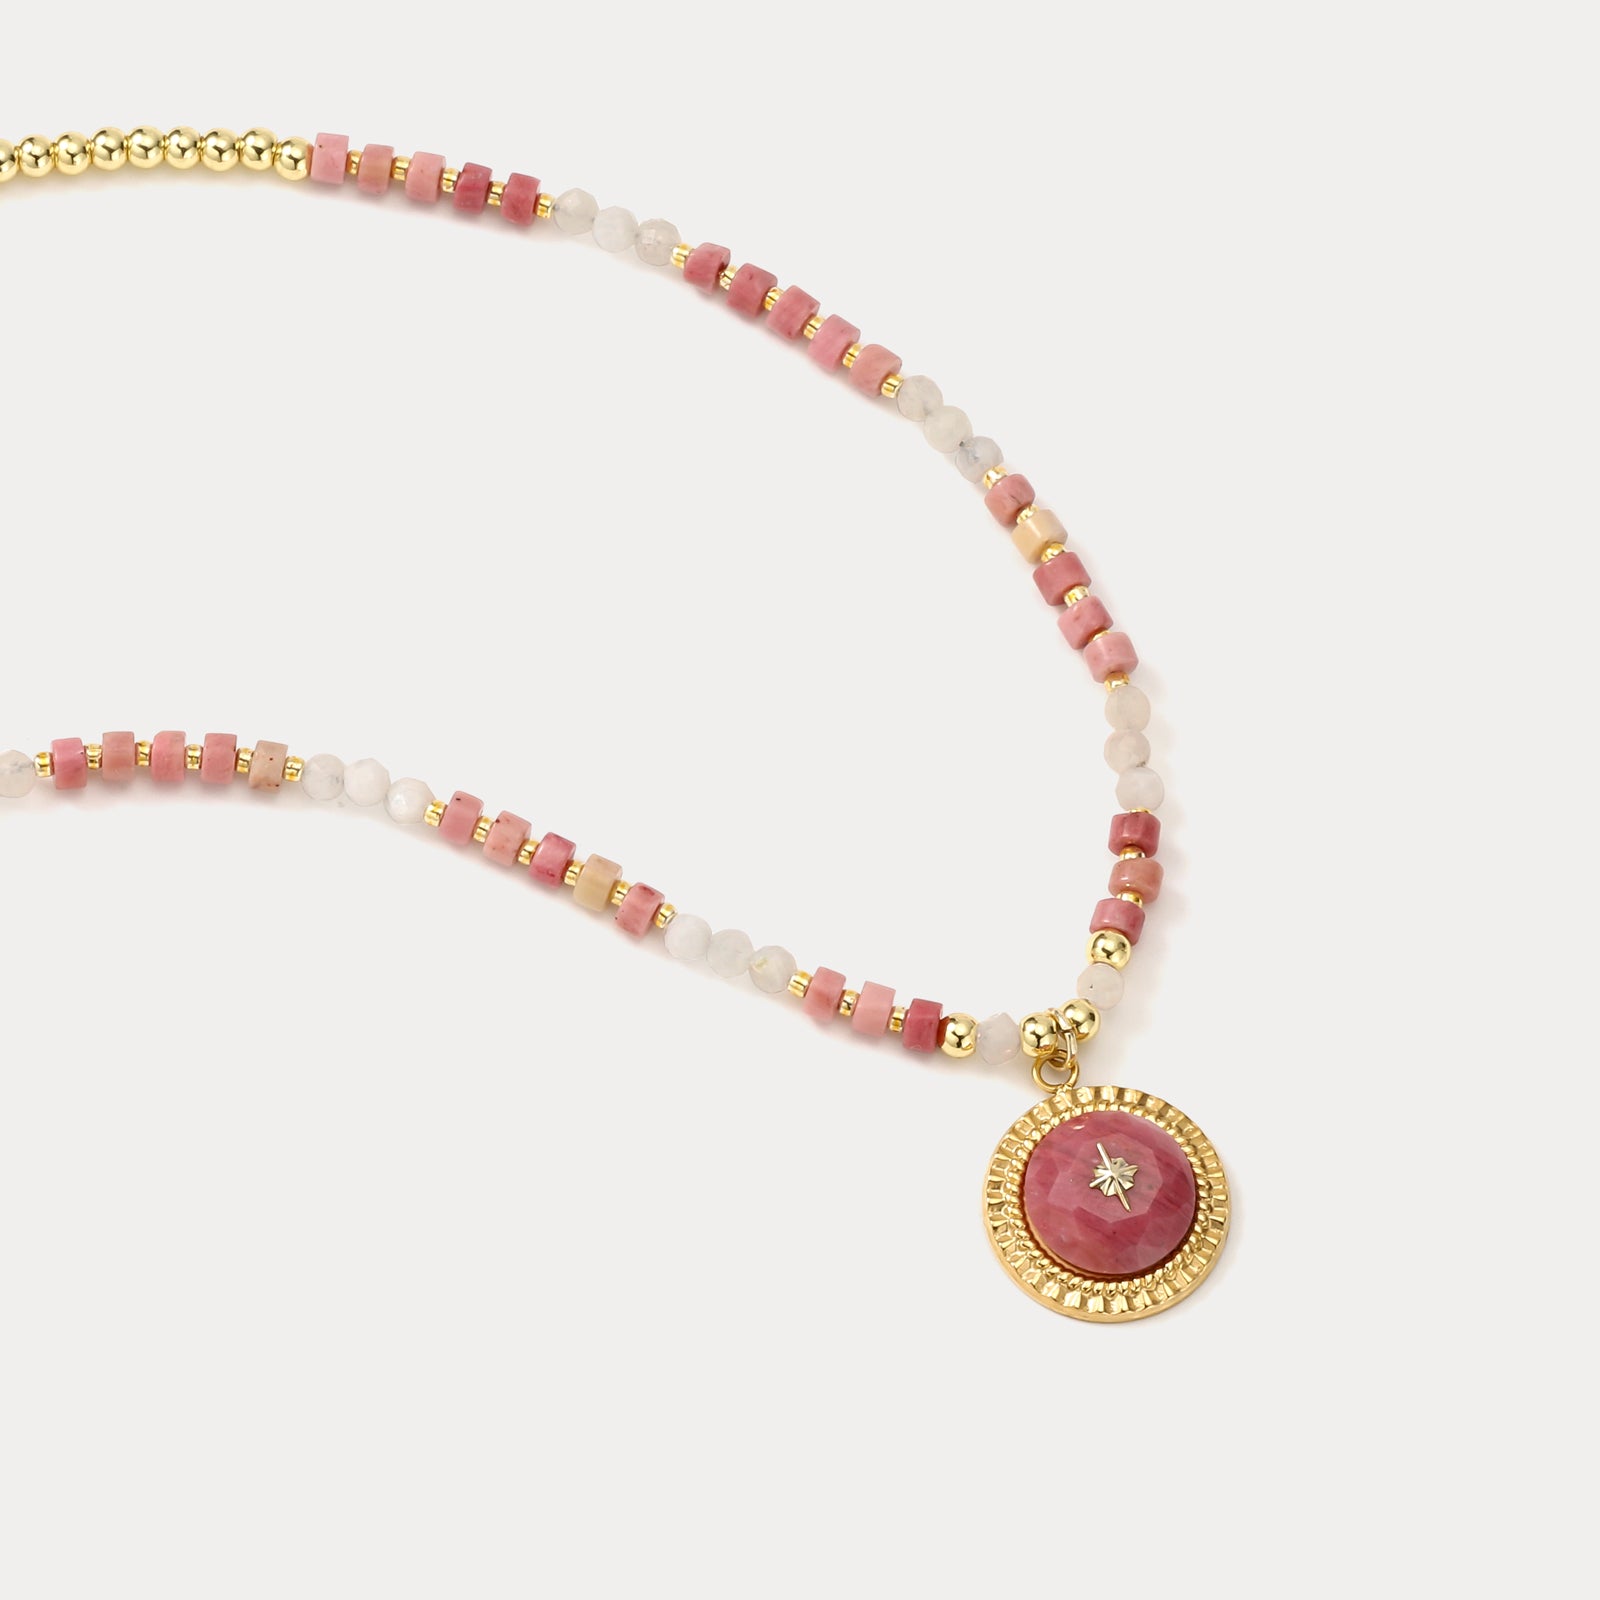 Desert Flower Beads Necklace